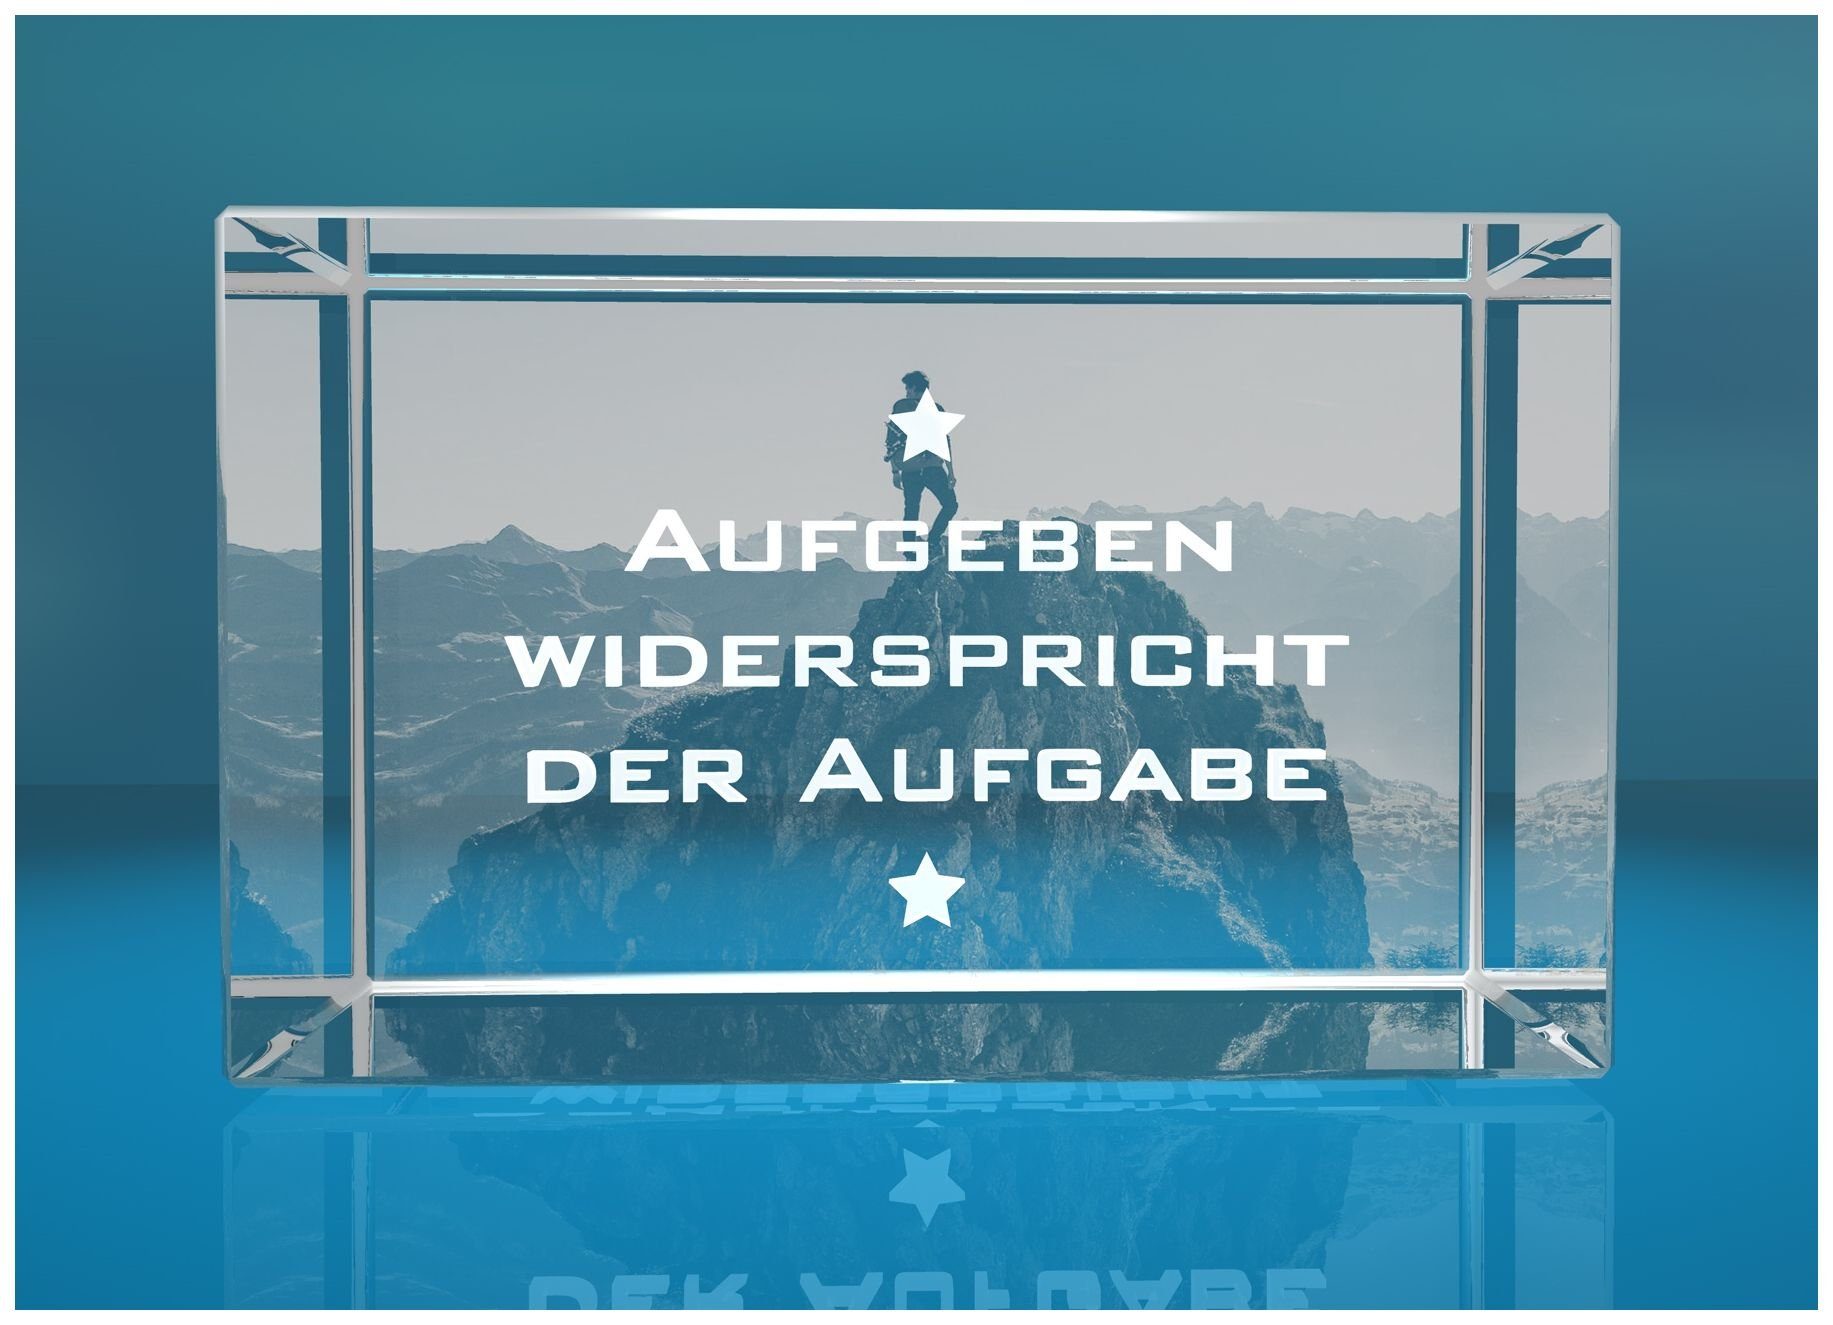 VIP-LASER Dekofigur 3D Glasquader Motivationsspruch Aufgeben widerspricht der Aufgabe, Hochwertige Geschenkbox, Made in Germany, Familienbetrieb